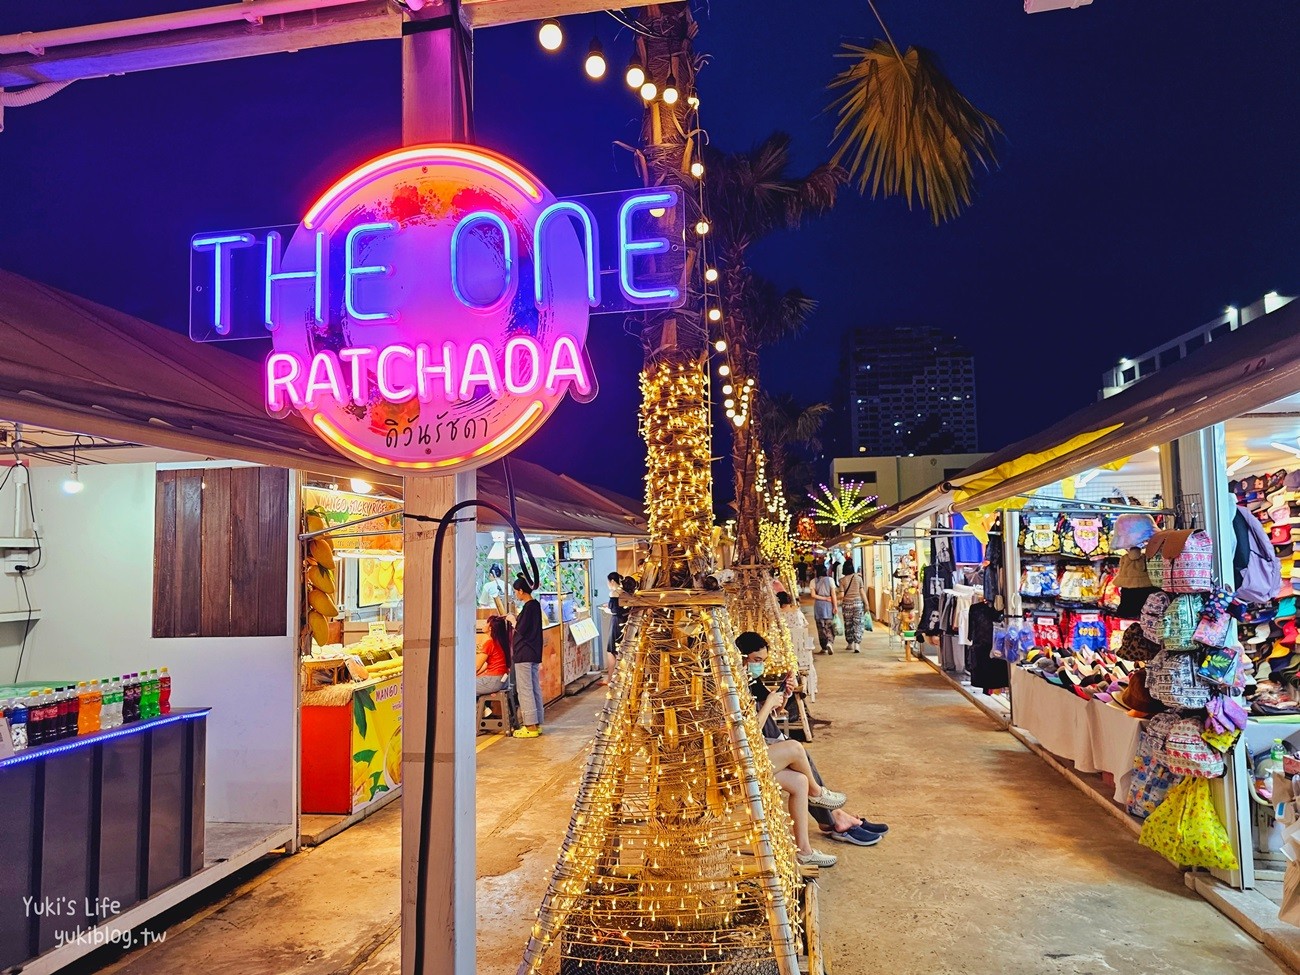 曼谷景點》The One Ratchada夜市(曼谷拉差達火車夜市)晚上逛街吃美食好去處~ - yukiblog.tw